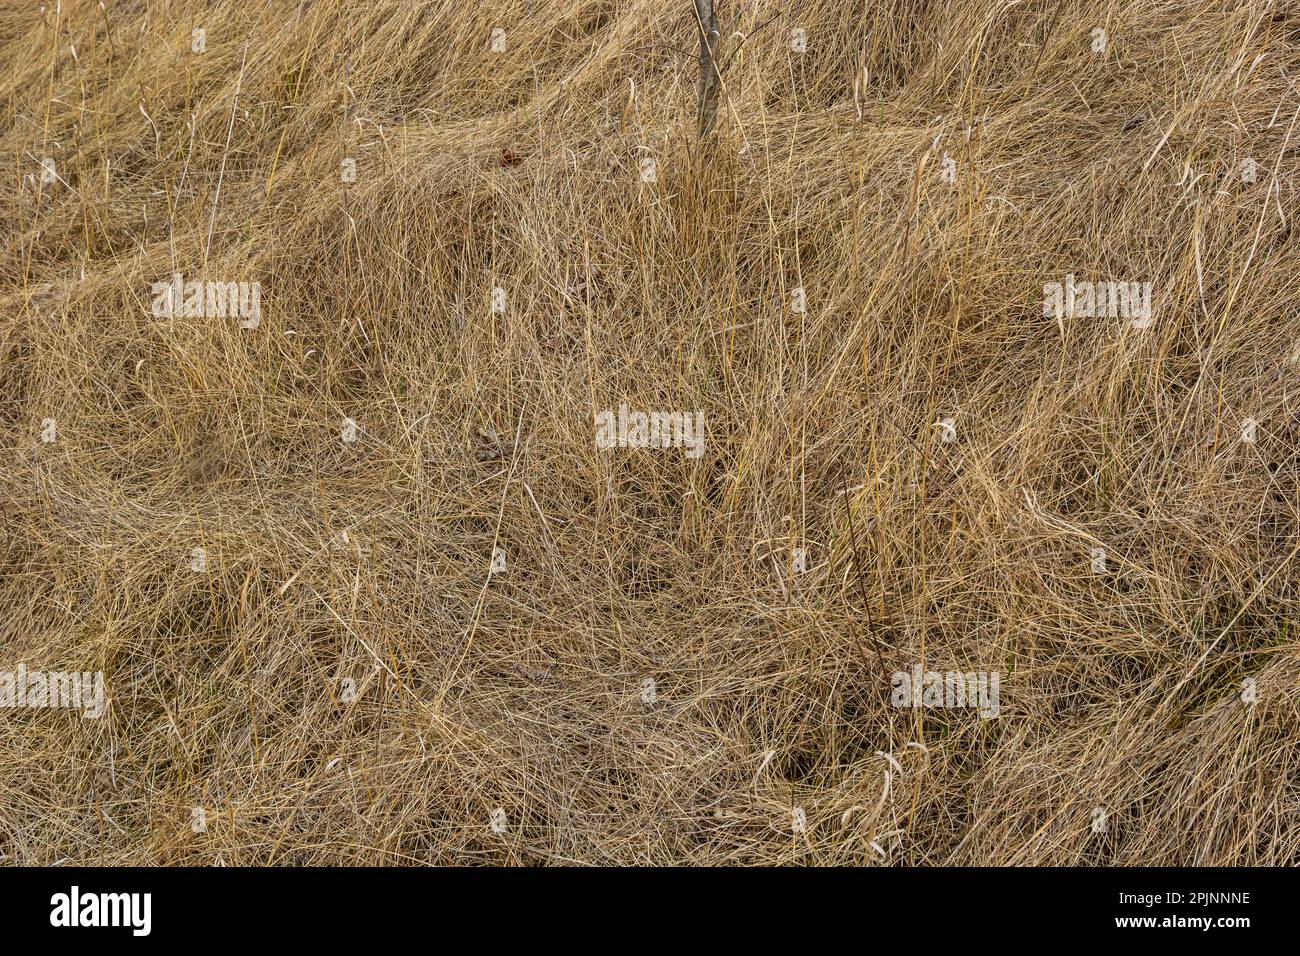 Erba secca, schiacciata dal vento e dalla pioggia, si trova in un campo. Erba morta gialla, sfondo naturale. Foto Stock